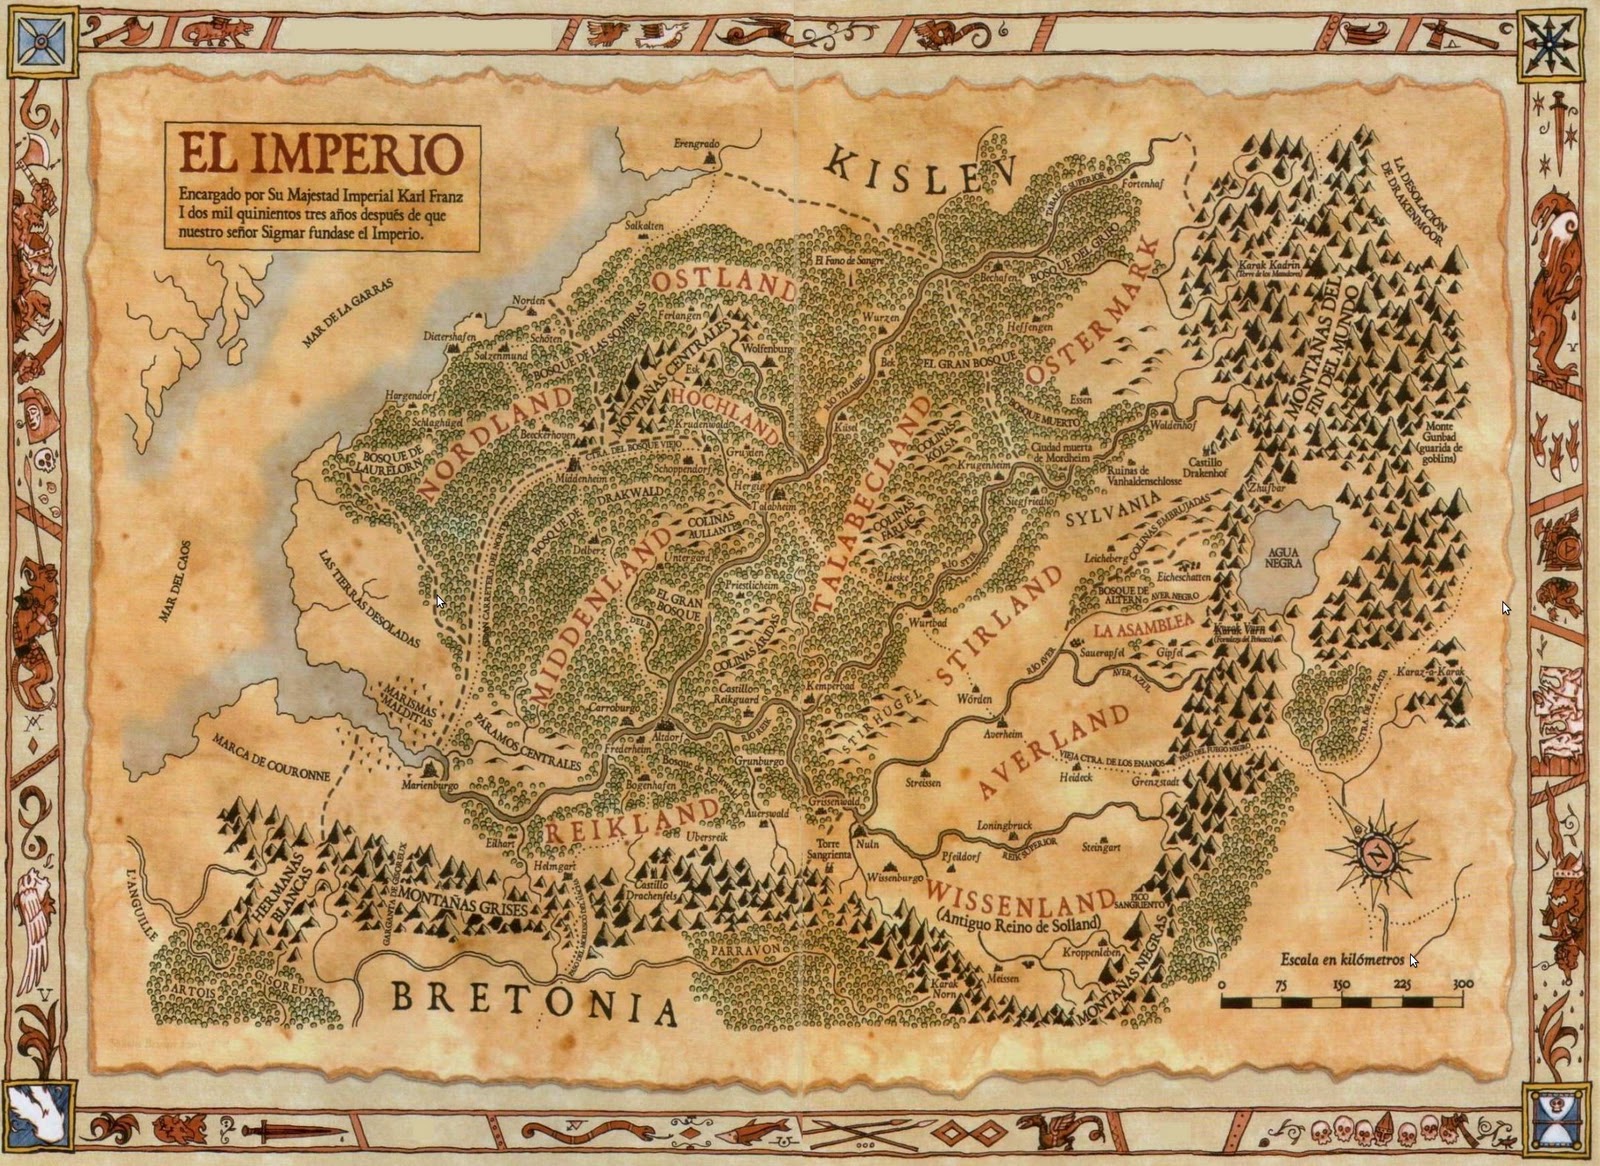 Manuscritos de Noah. Parte 1: El Imperio. Mapa+Imperio